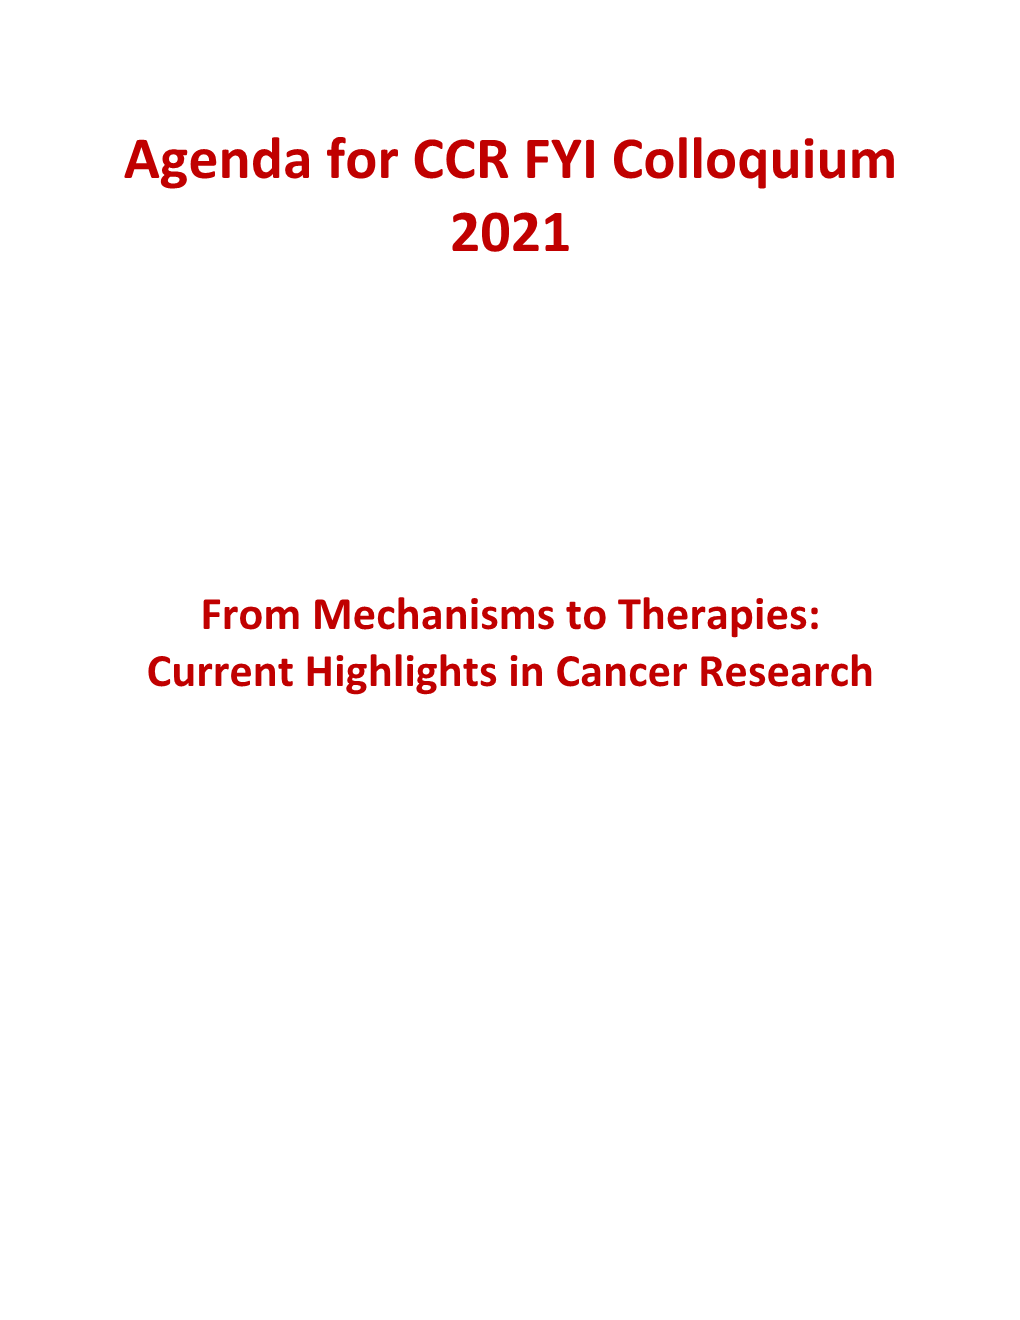 Agenda for CCR FYI Colloquium 2021